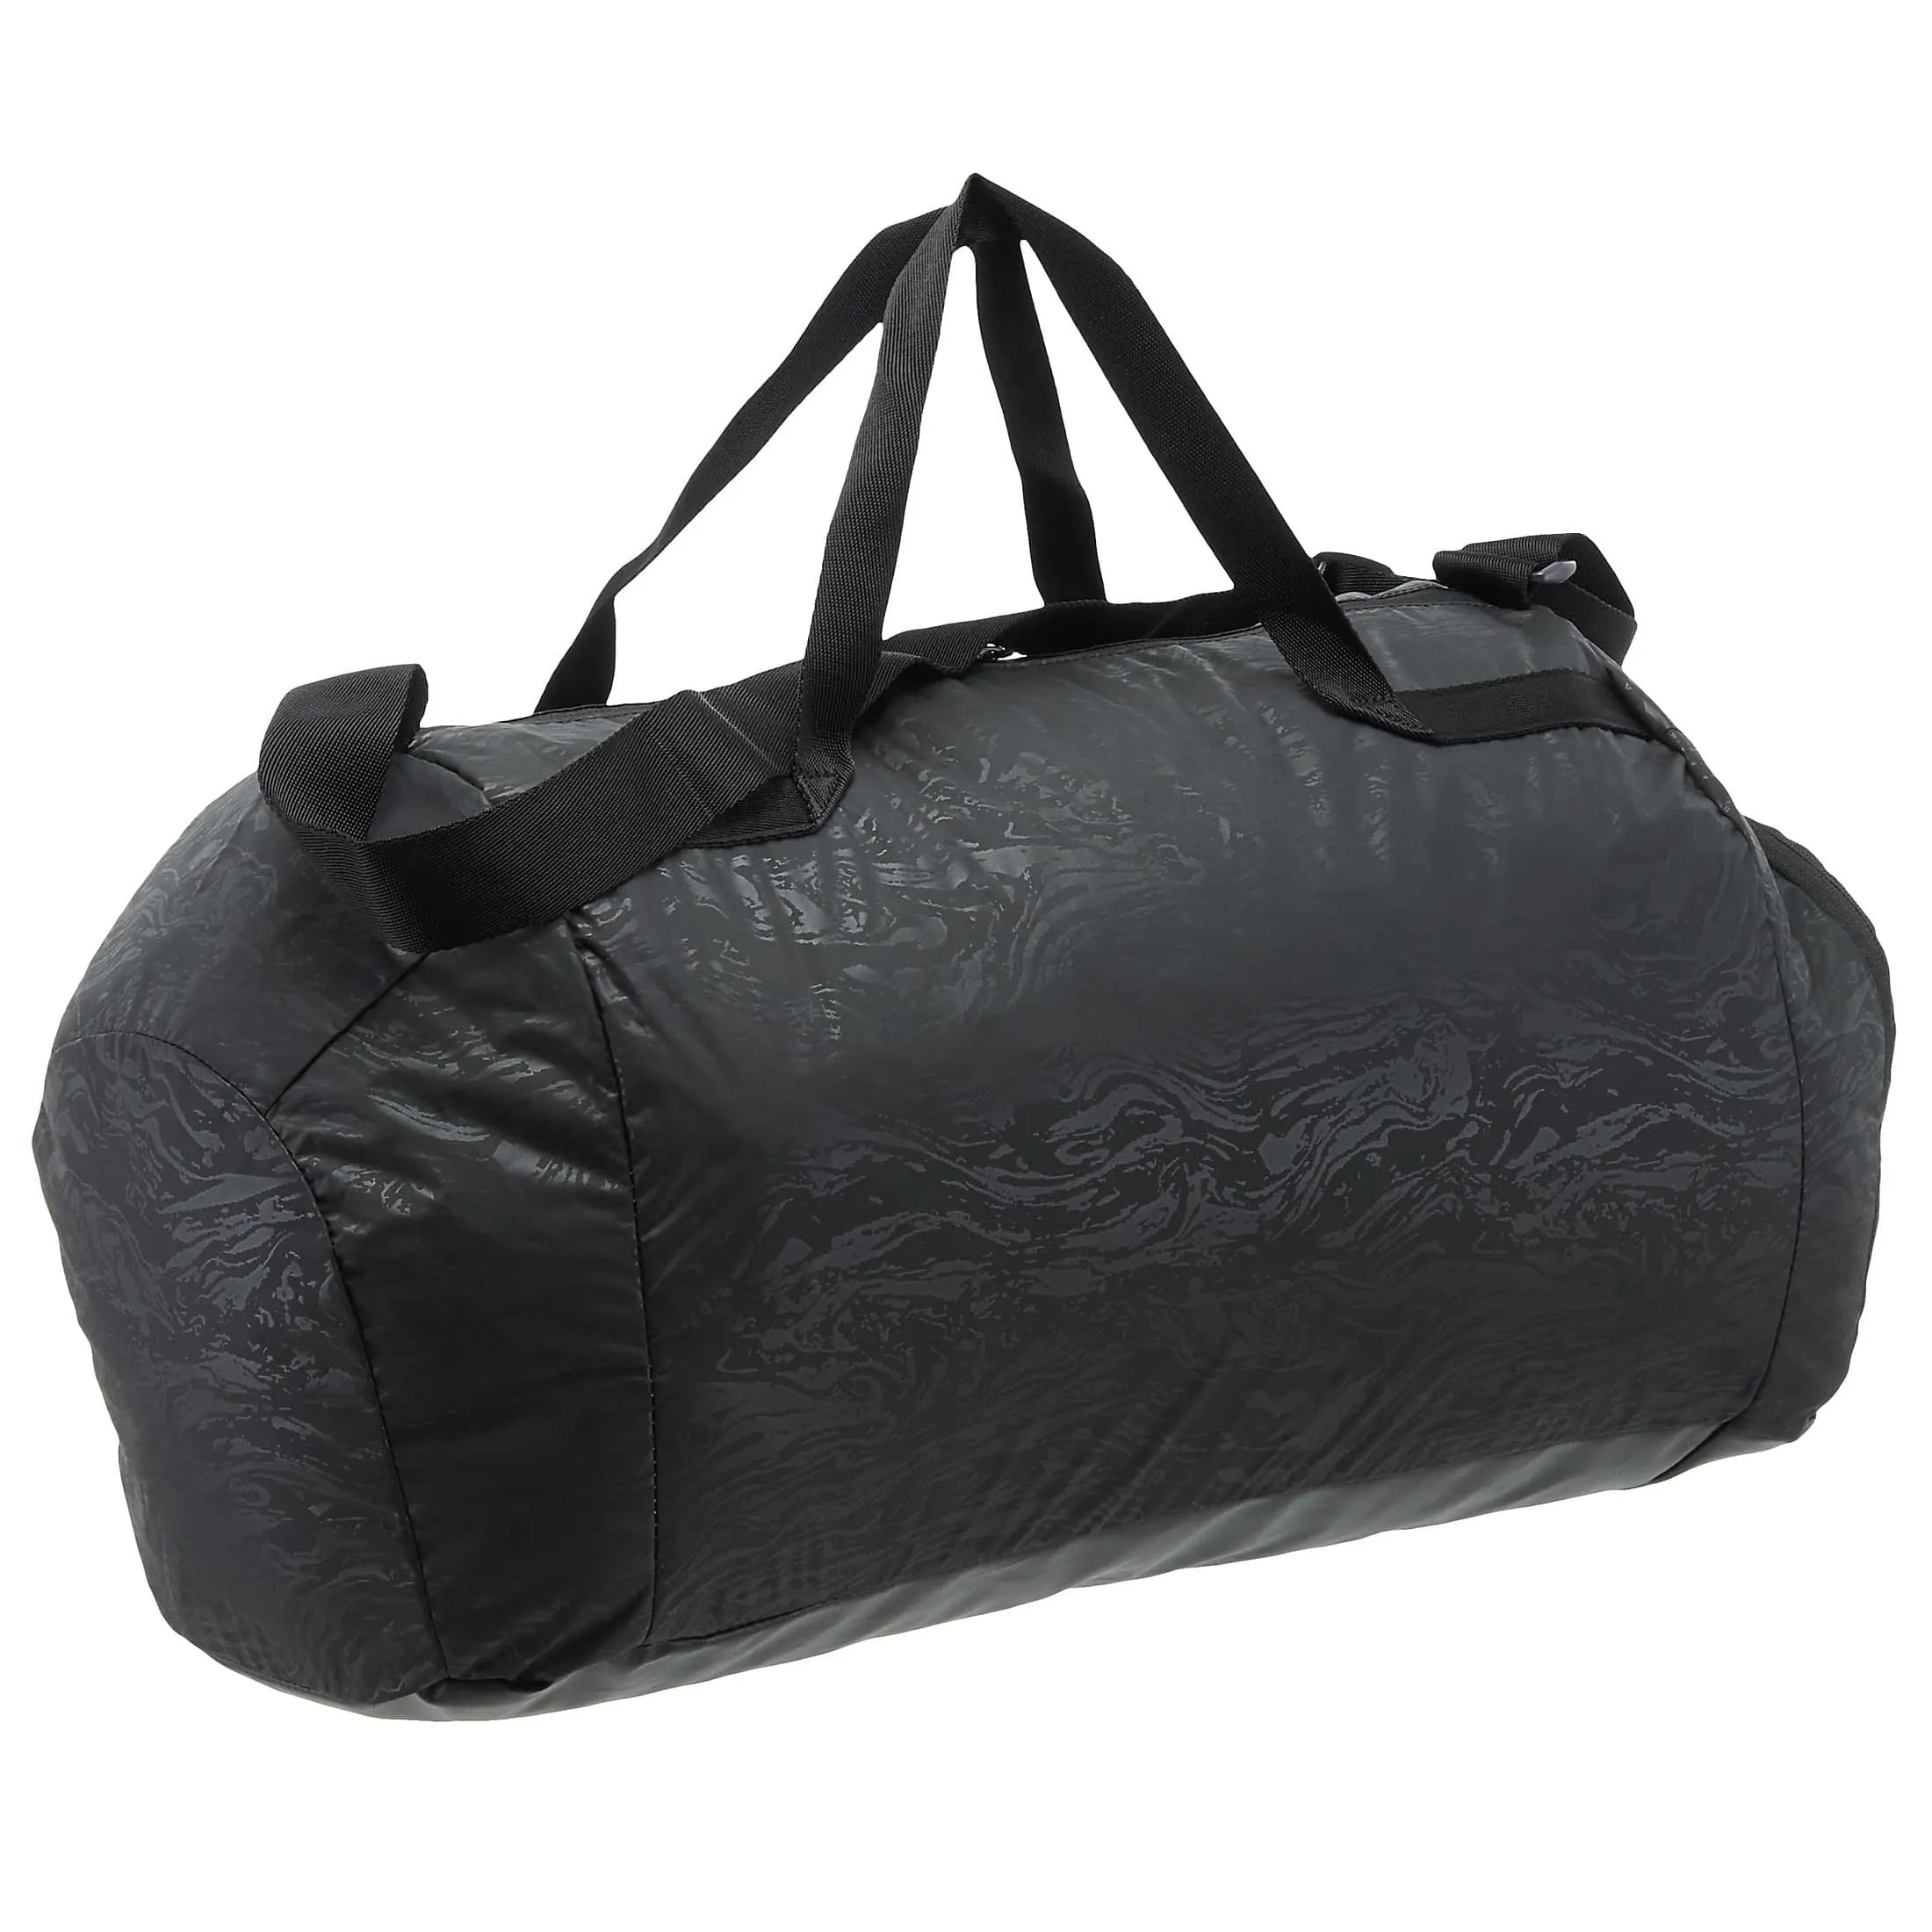 Puma Fit AT Sports Duffle sac de sport 55 cm - noir-argent réfléchissant